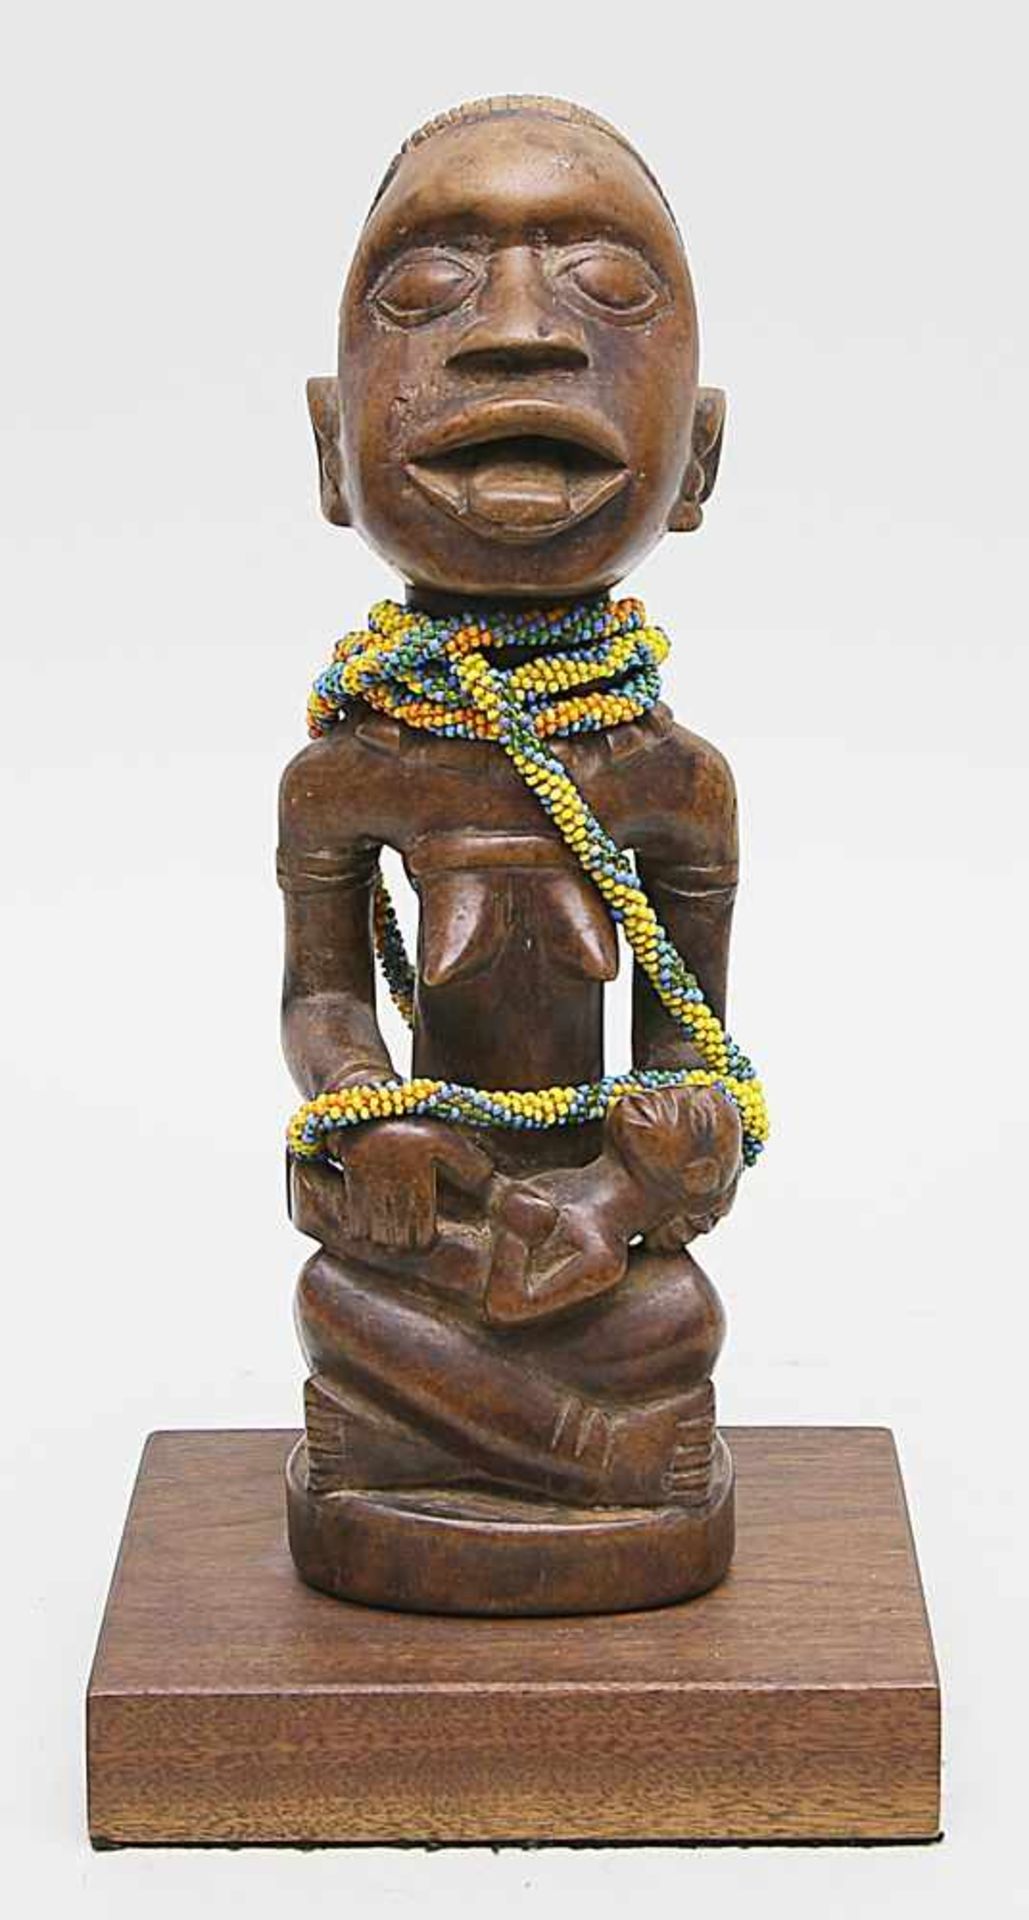 Afrikanische Skulptur.Mutter mit Kind. Holz, vollplastisch geschnitzt, behangen mit Glasperlenkette.